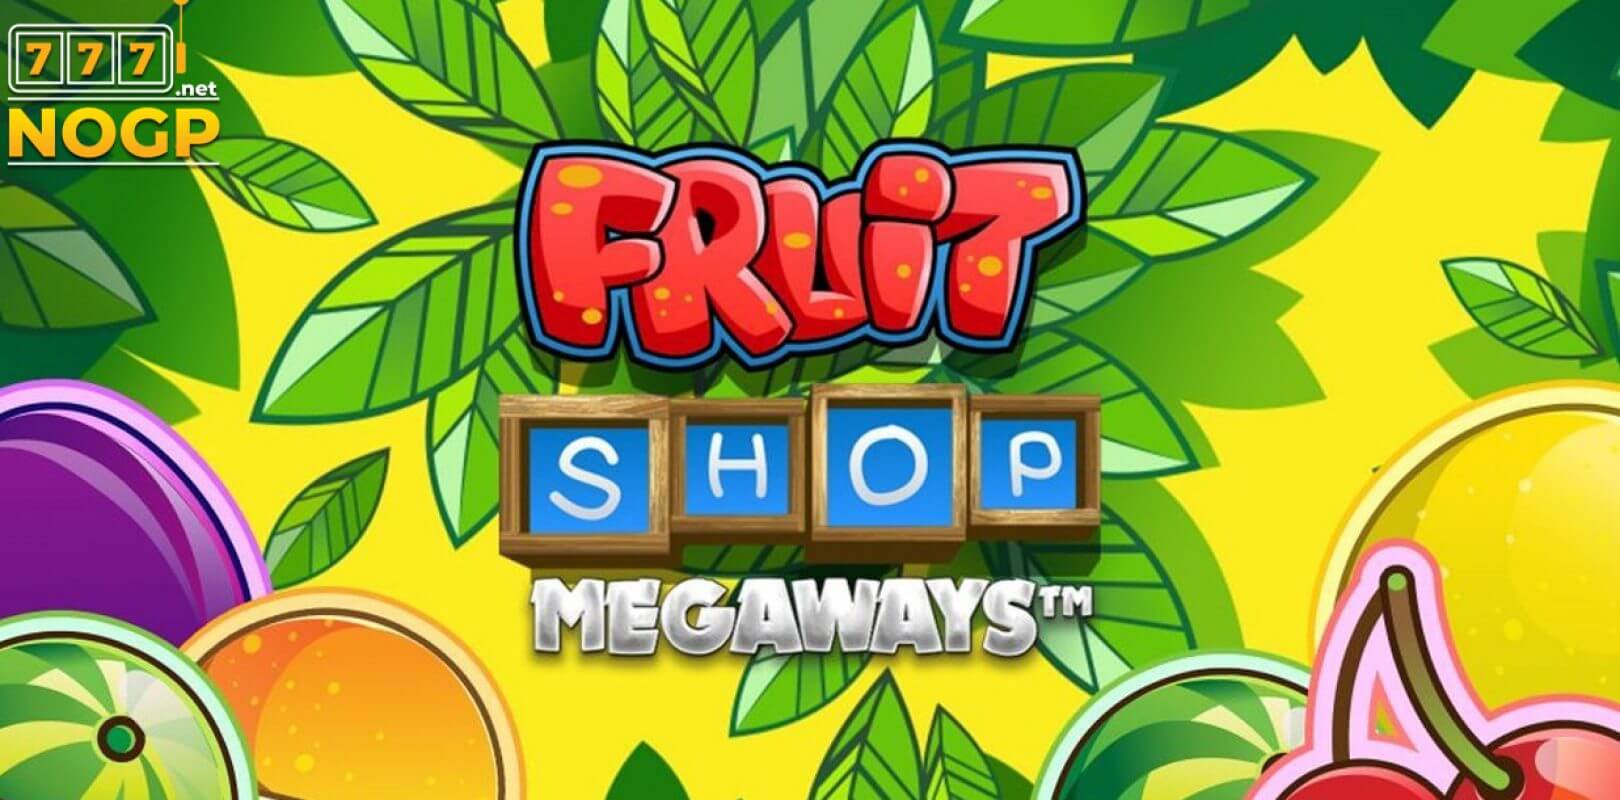 Fruitshop casino slot visual